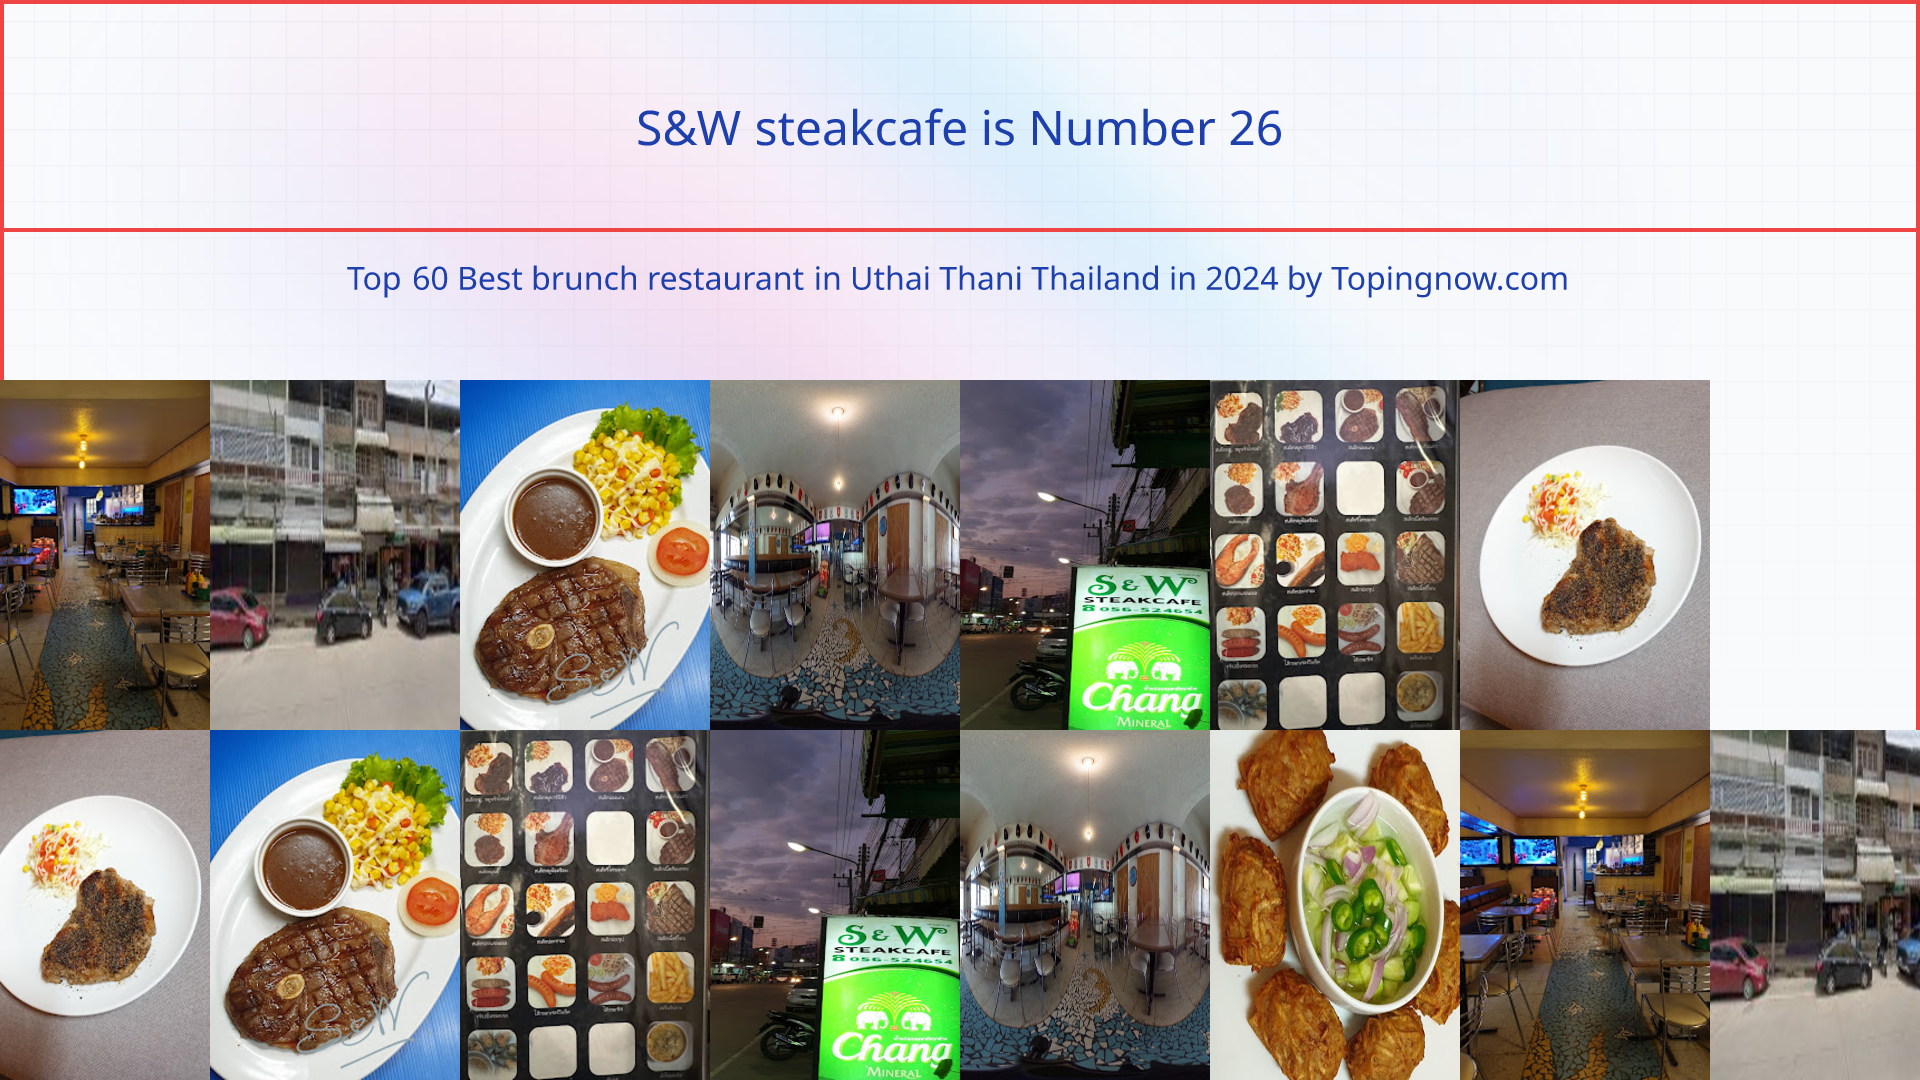 S&W steakcafe: Top 60 Best brunch restaurant in Uthai Thani Thailand in 2024